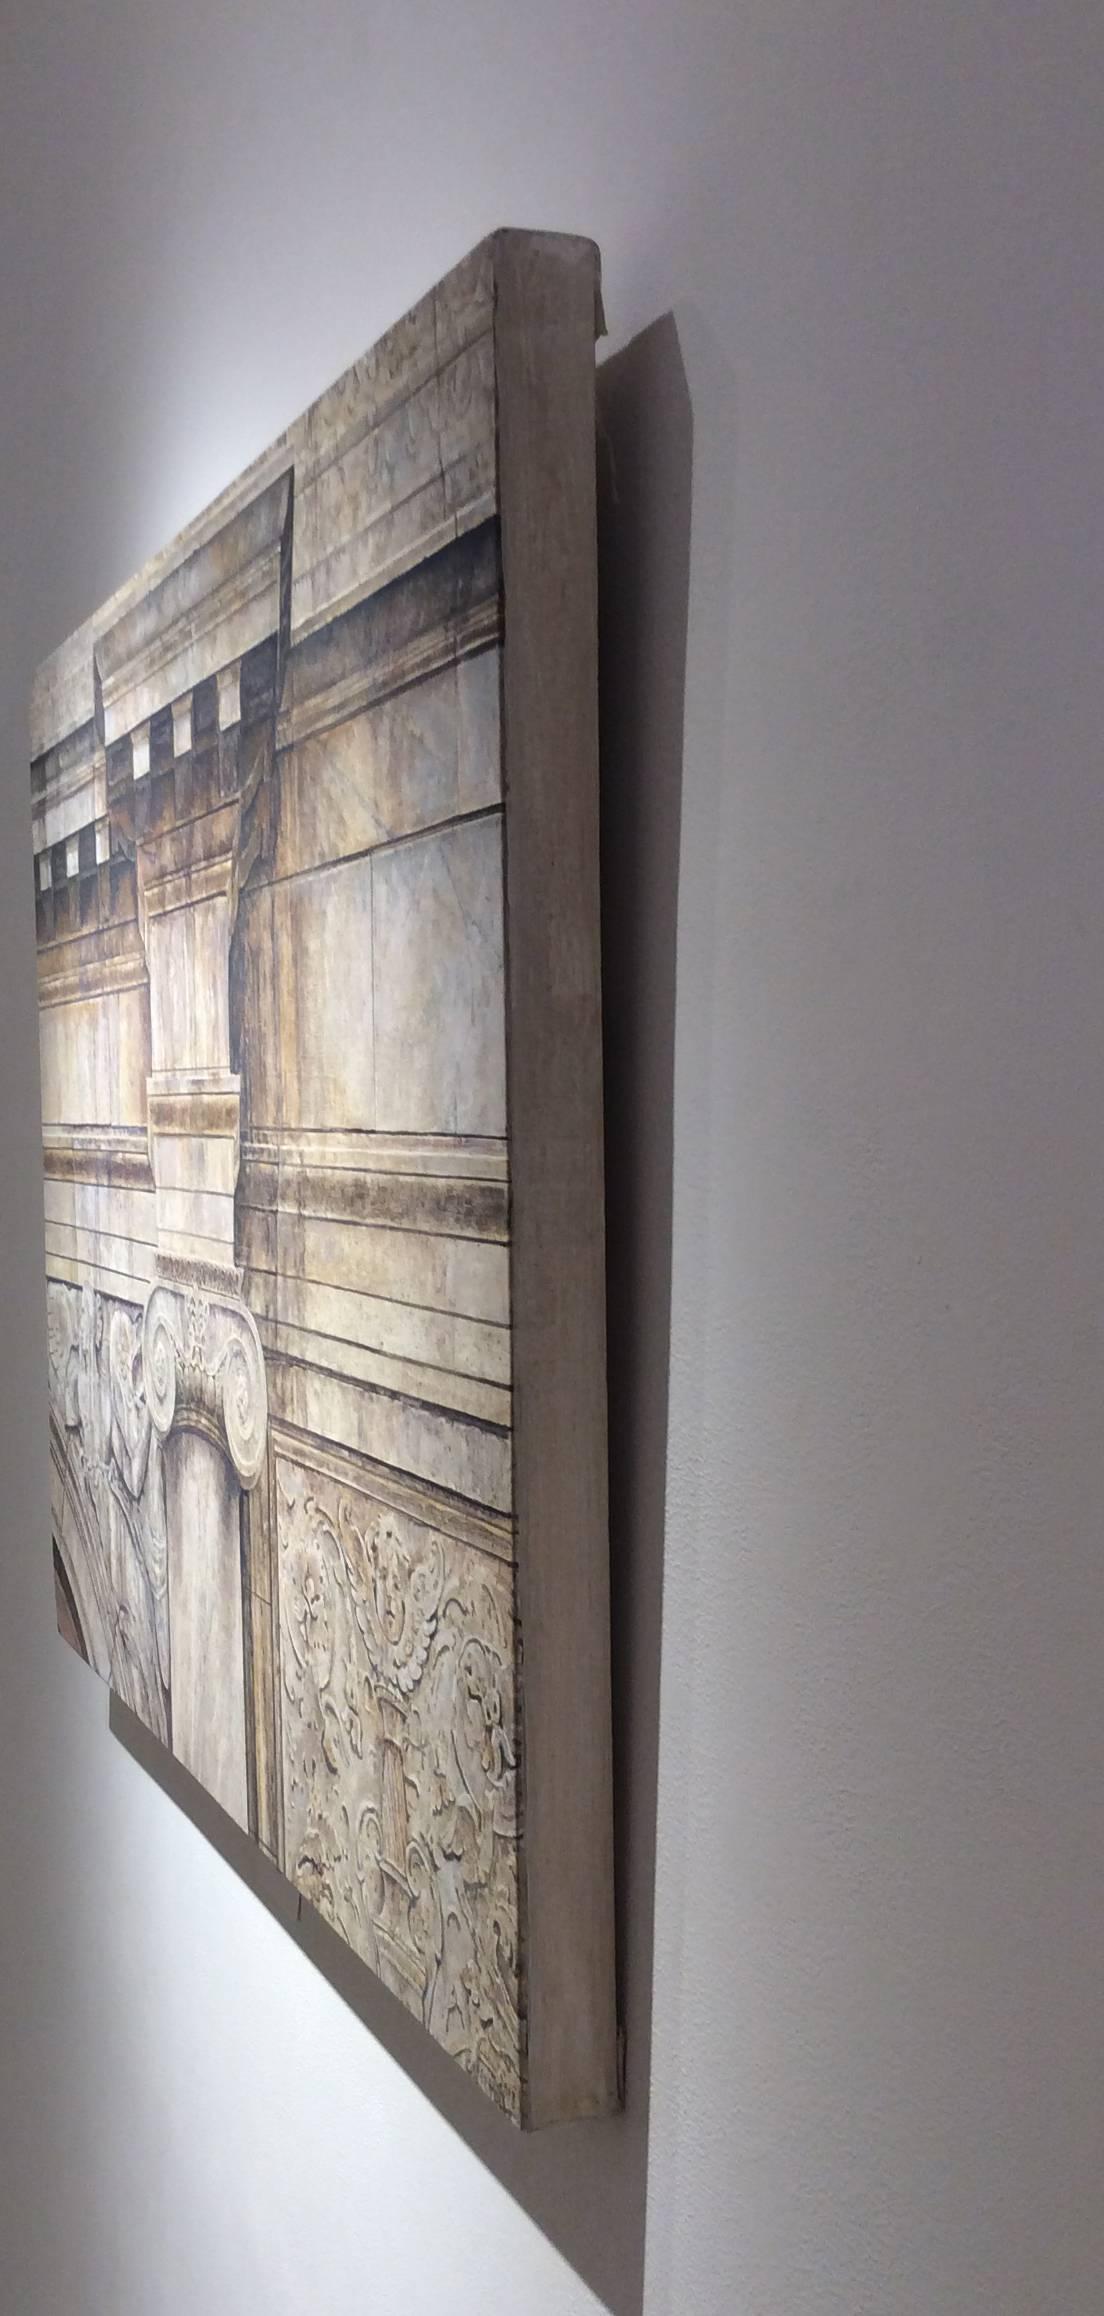 30 x 40 Zoll
horizontales fotorealistisches Ölgemälde auf Leinwand von neoklassizistischer Architektur 

Die Themen von Herrn Britell stammen aus der Welt der vormodernen Architektur. Er konzentriert sich auf Backsteinfassaden, Mauerwerk und die